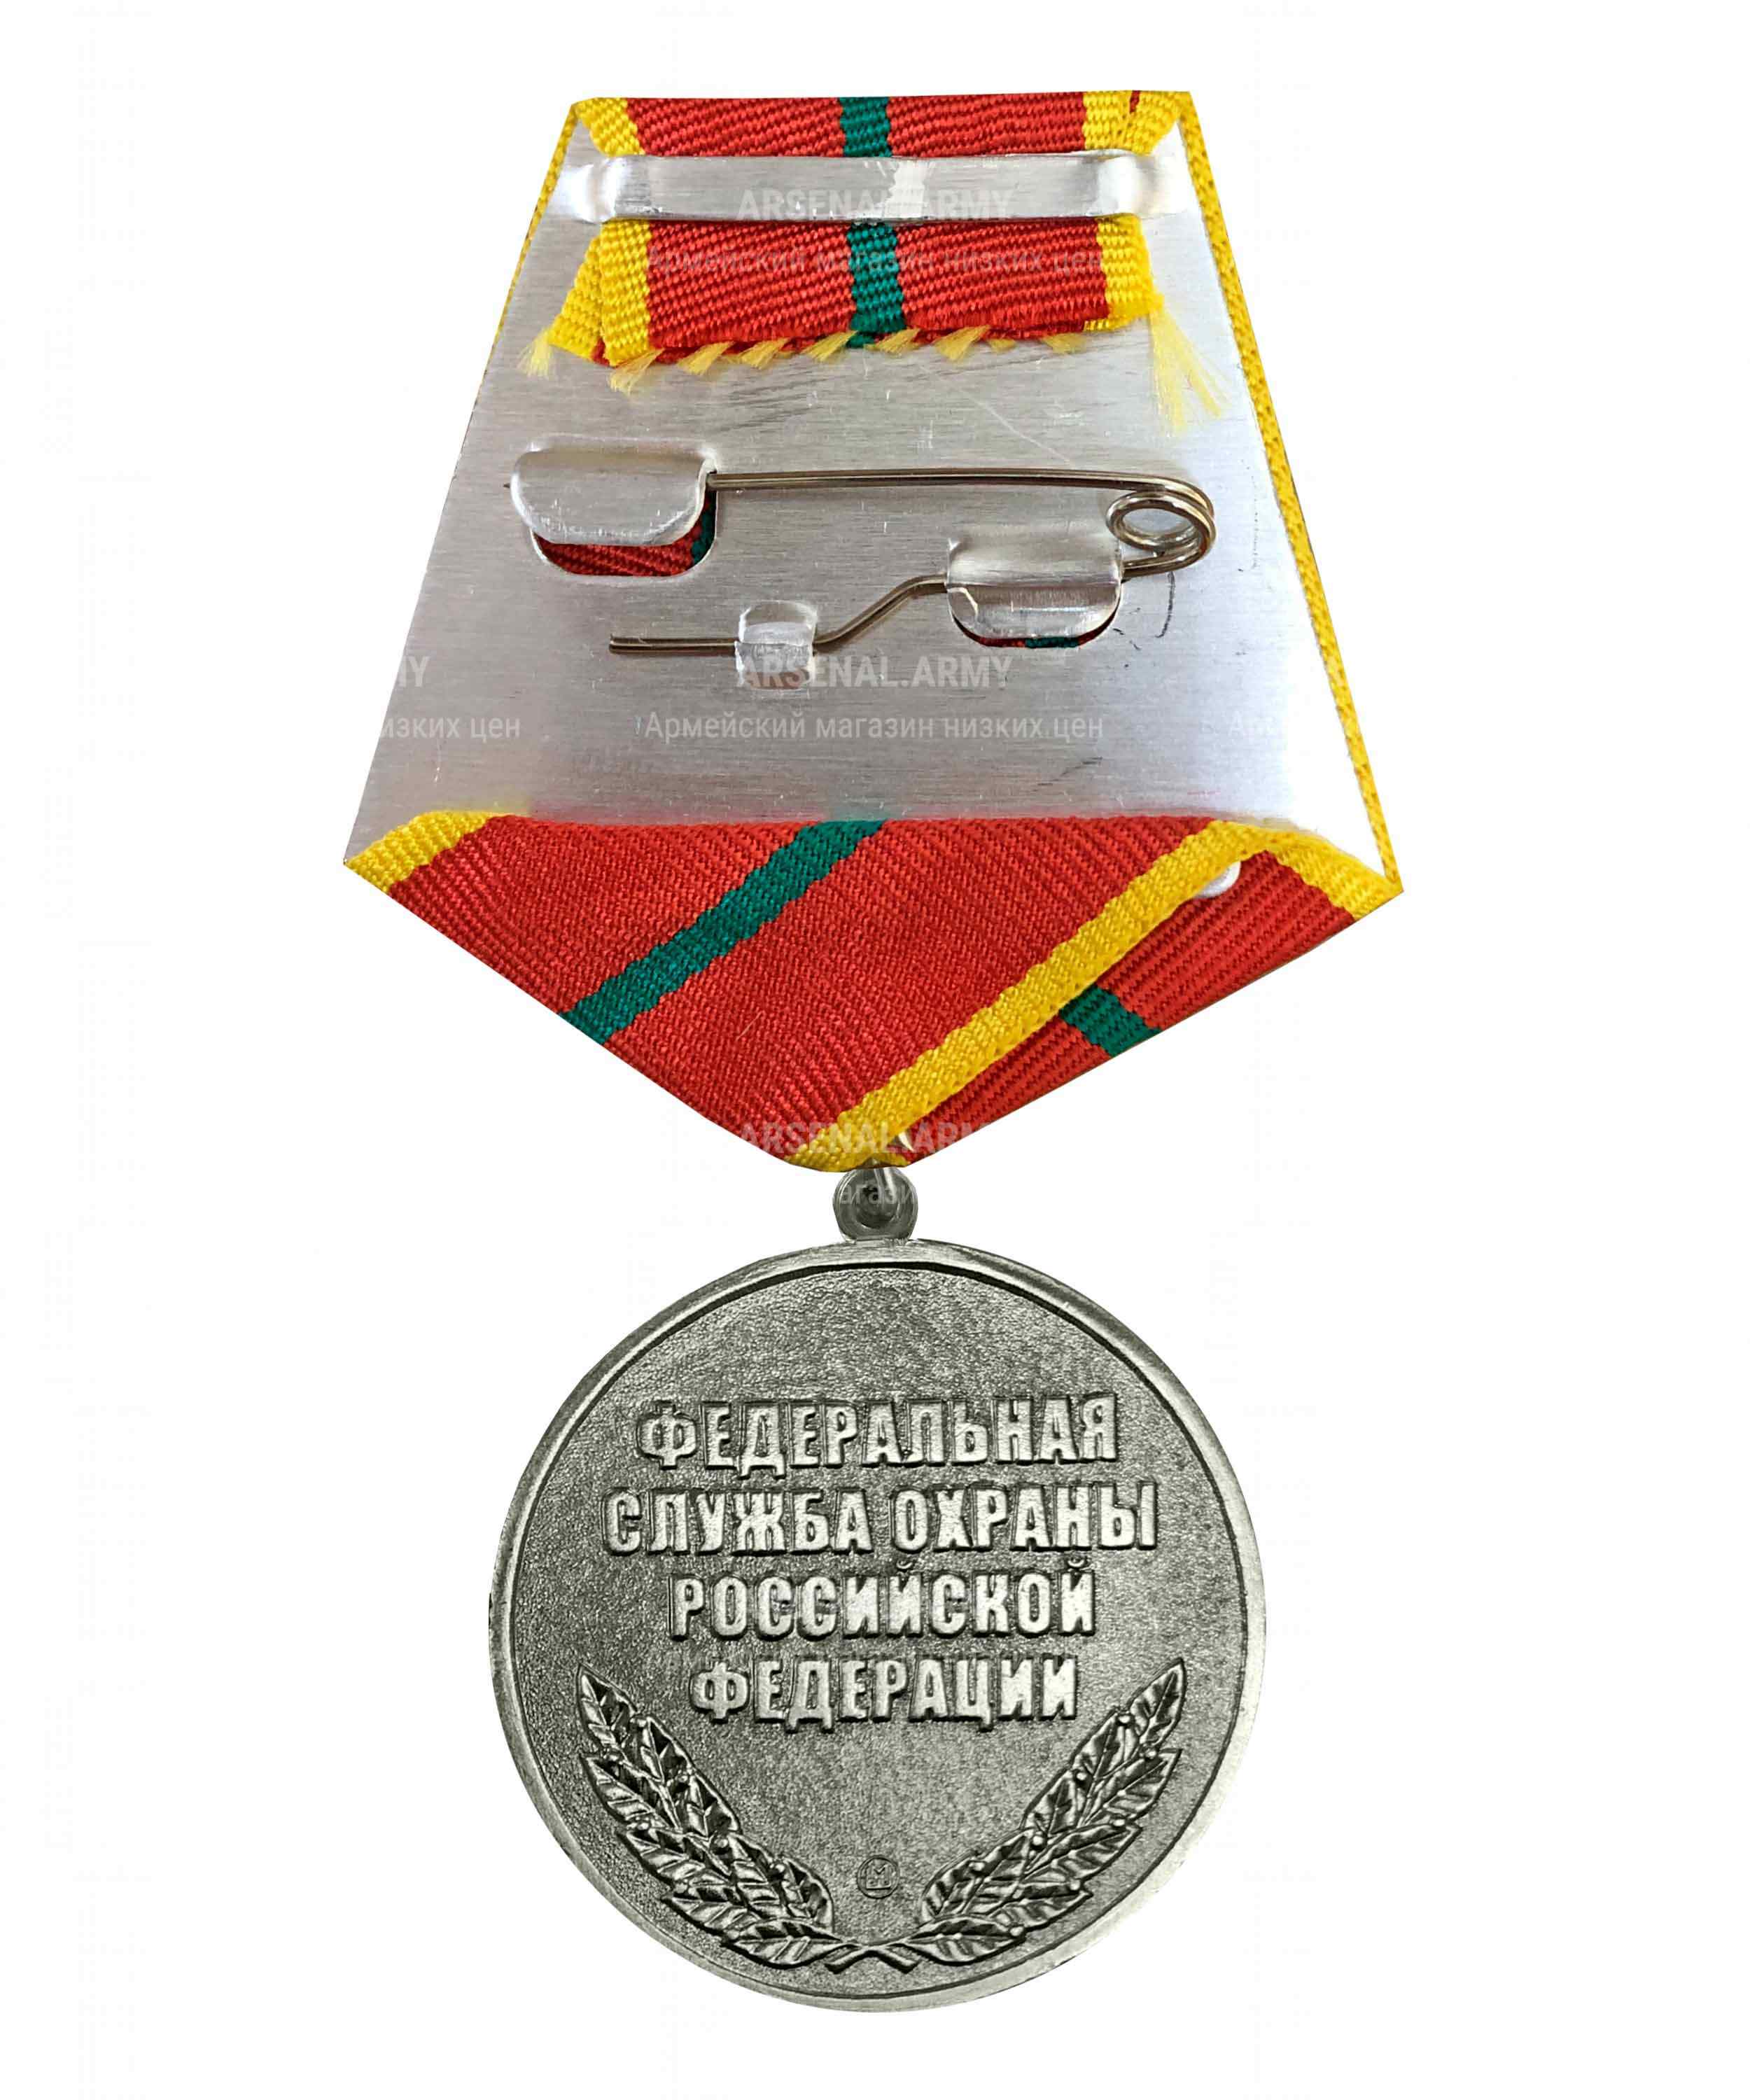 Медаль ФСО "За отличие в военной службе" 1 степени — 2